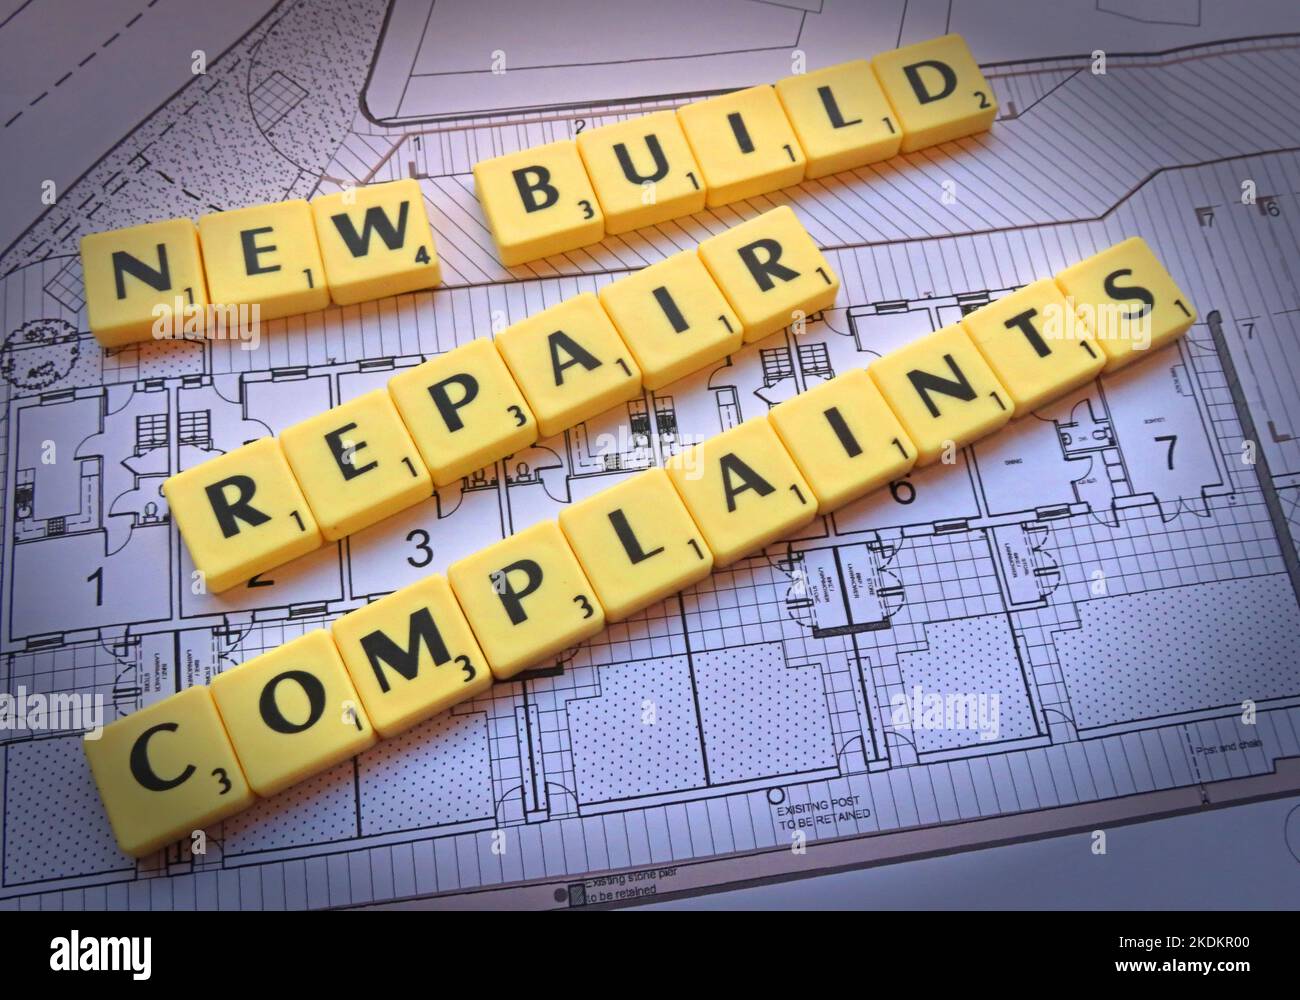 Plaintes concernant la réparation de nouveaux immeubles - lettres de Scrabble sur les plans d'un régime de logement - questions de propriété Banque D'Images